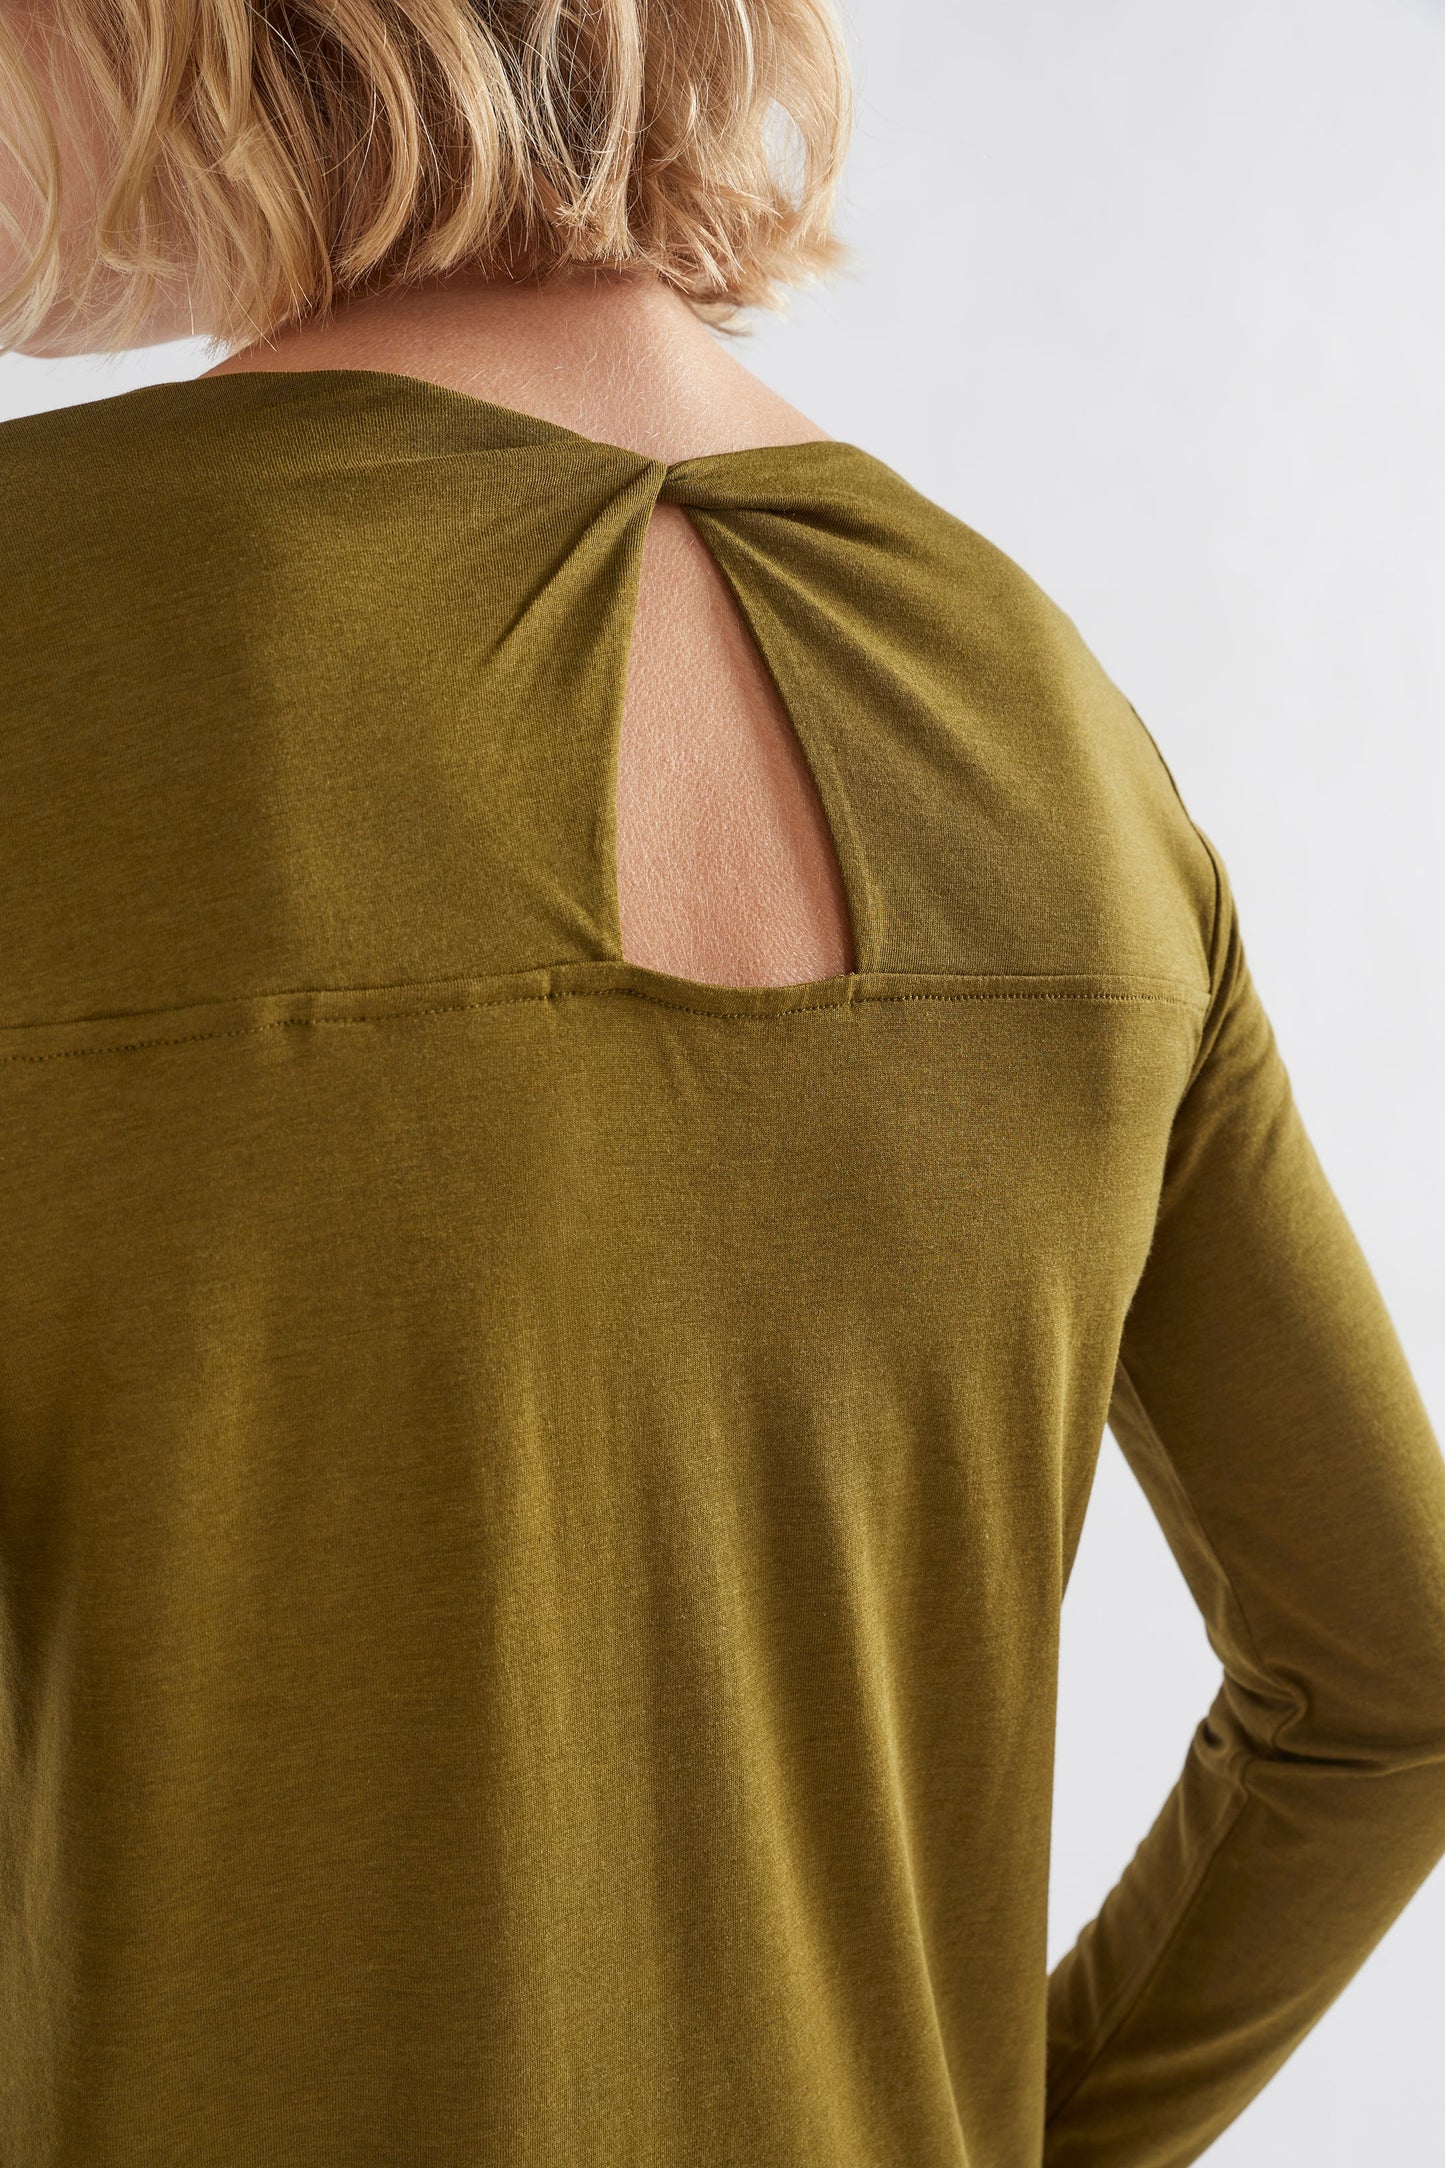 Torce Twist Back Long Sleeve Jersey Top Model Back detail | DARK CITRONELLE